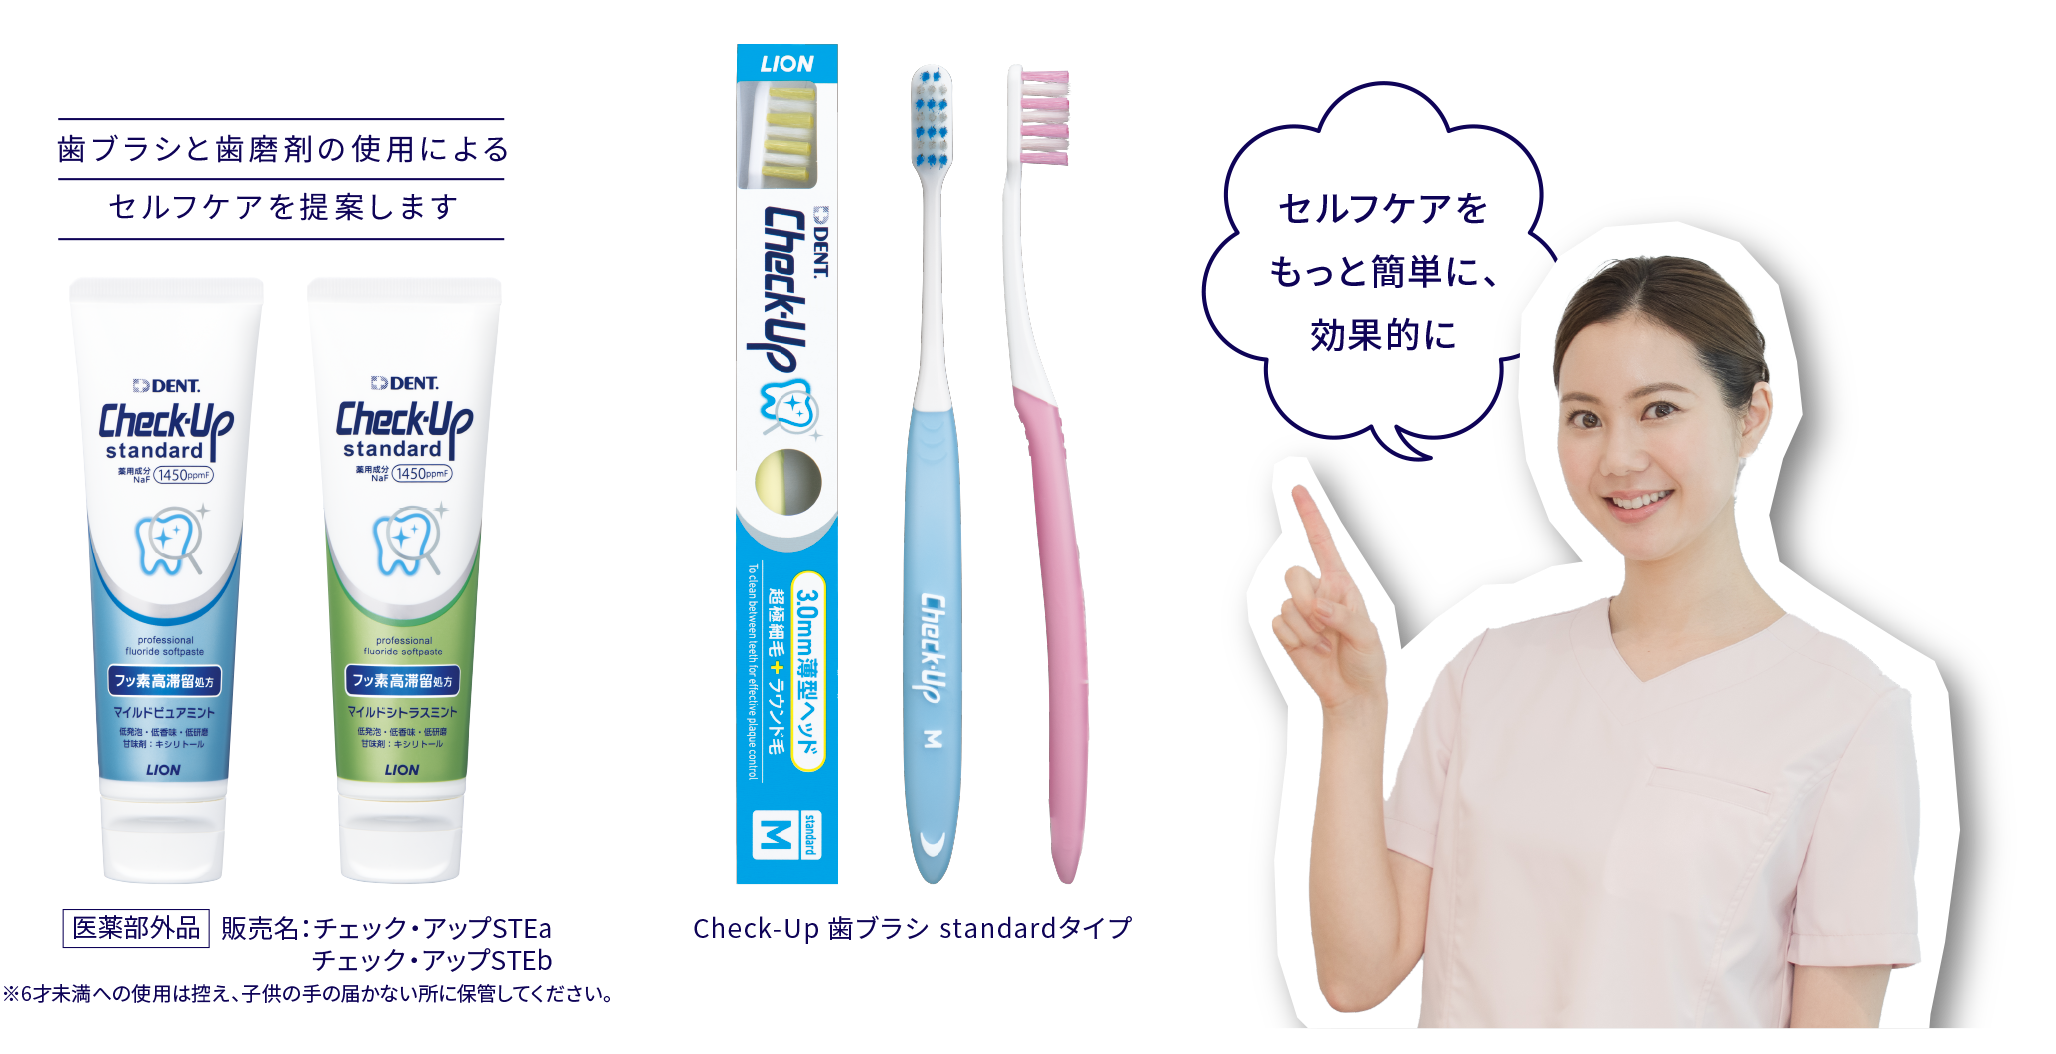 歯ブラシと歯磨剤の使用による セルフケアを提案します Check-Up歯ブラシstandardタイプ セルフケアを もっと簡単に、効果的に